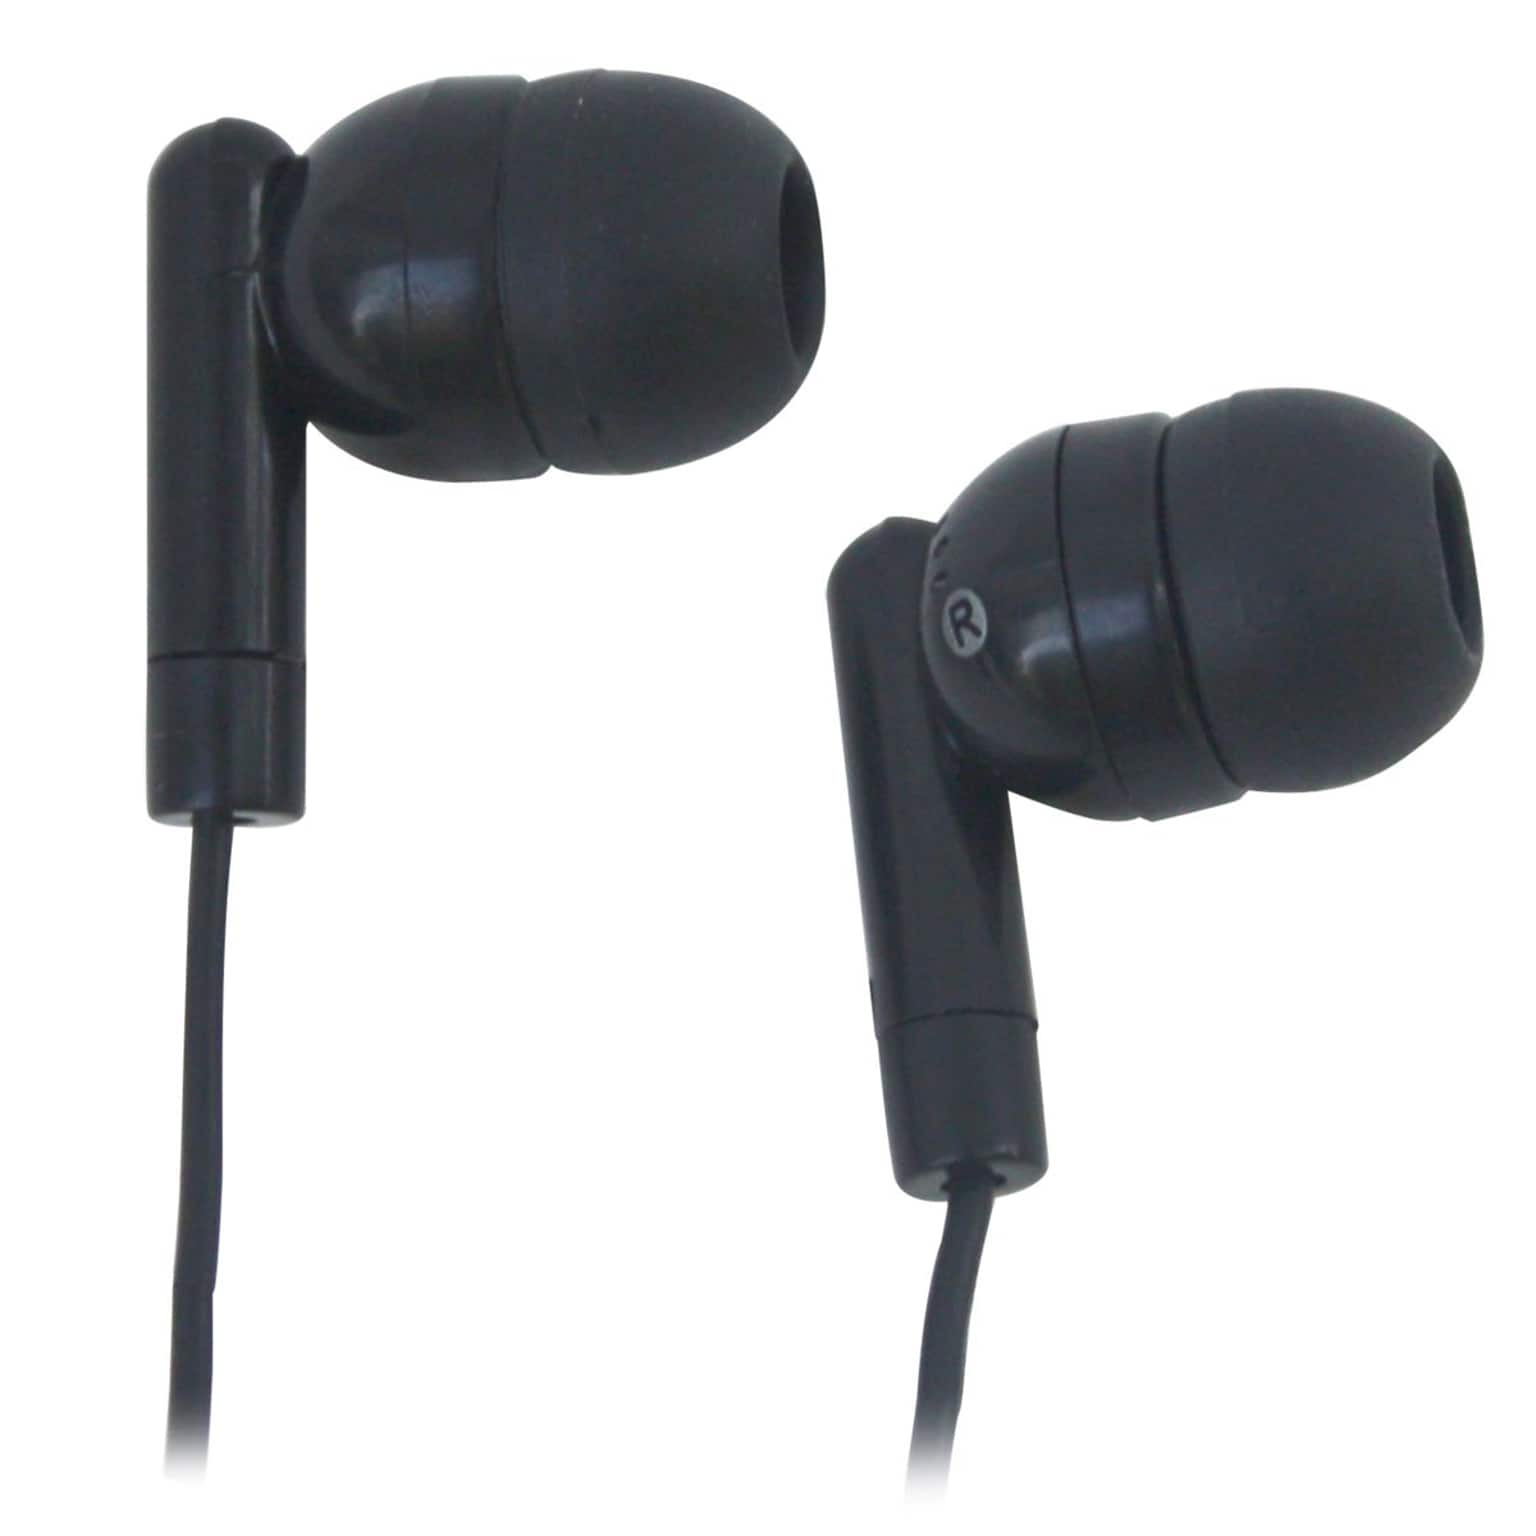 HamiltonBuhl HA-EBS Silicone Ear Buds, Black